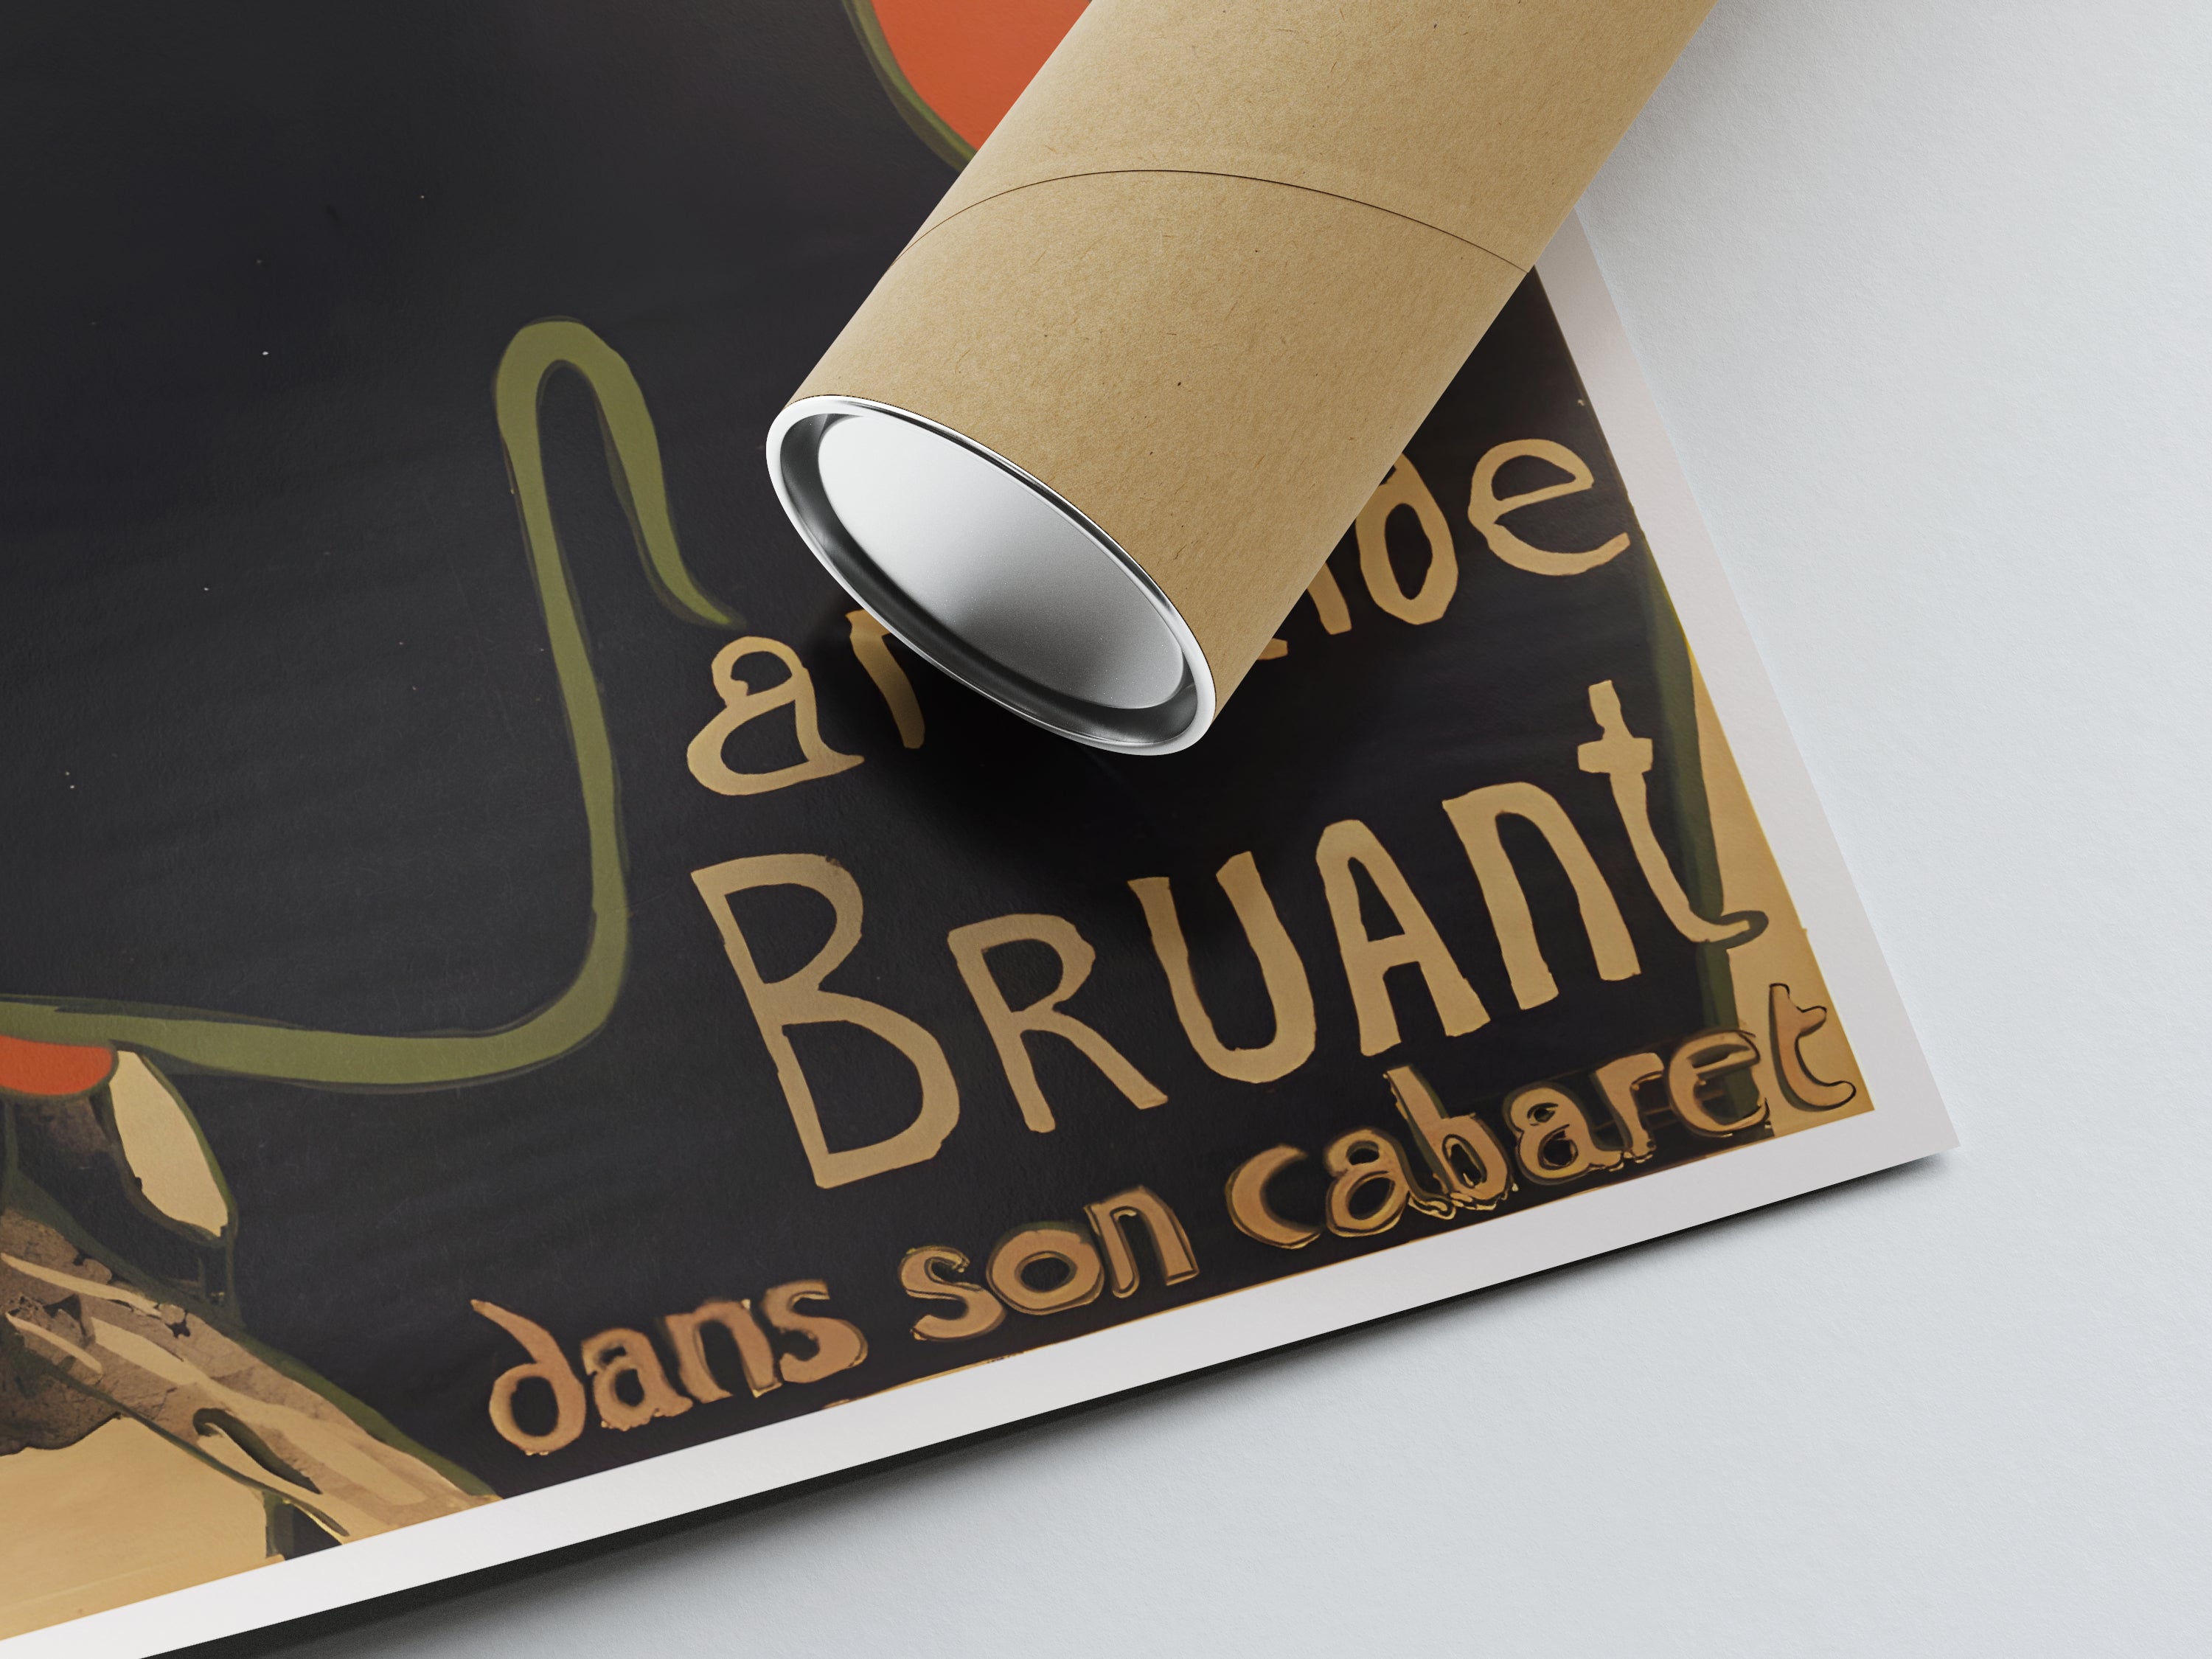 Toulouse-Lautrec poster "Aristide Bruant" - Art Nouveau - High Definition - matte paper 230gr/m²